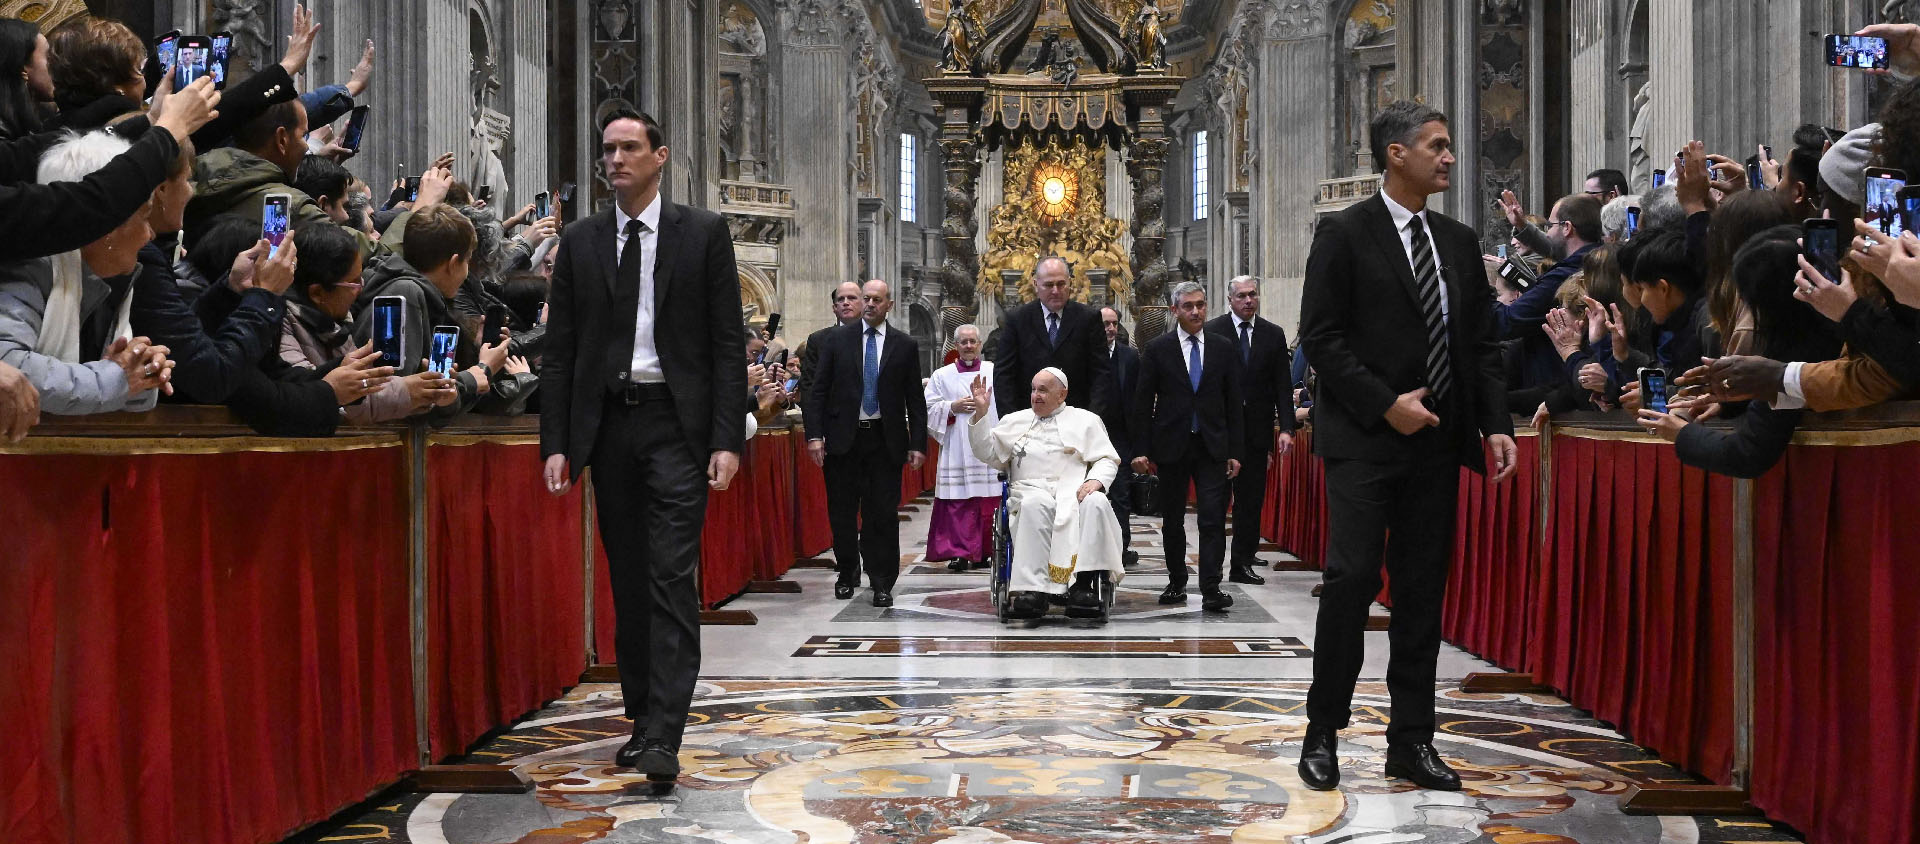 De nombreux pauvres venus de Rome, d’Italie et du monde entier occupaient les premiers rangs dans la basilique Saint-Pierre | © Vatican Media